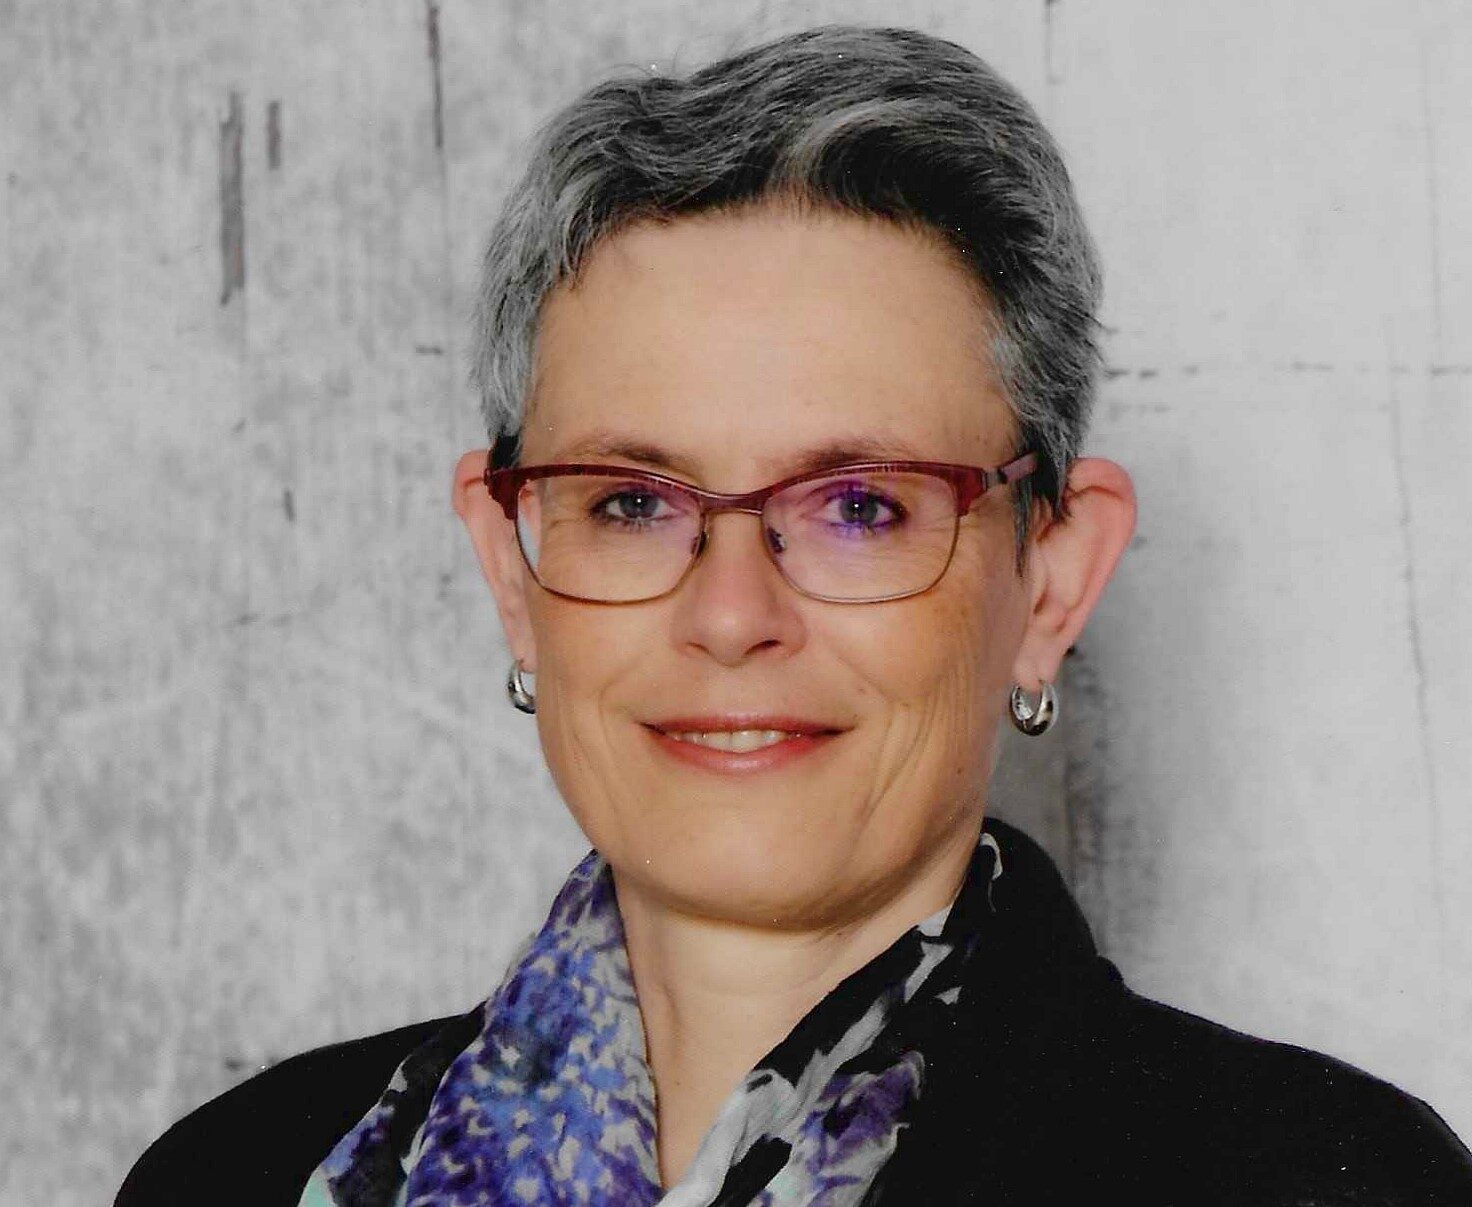 Dr. Regina Webersberger ist Allgemeinmedizinerin, Kneipp-Ärztin und Präsidentin der österreichischen Gesellschaft für Kneipp-Medizin und traditionelle europäische Medizin.